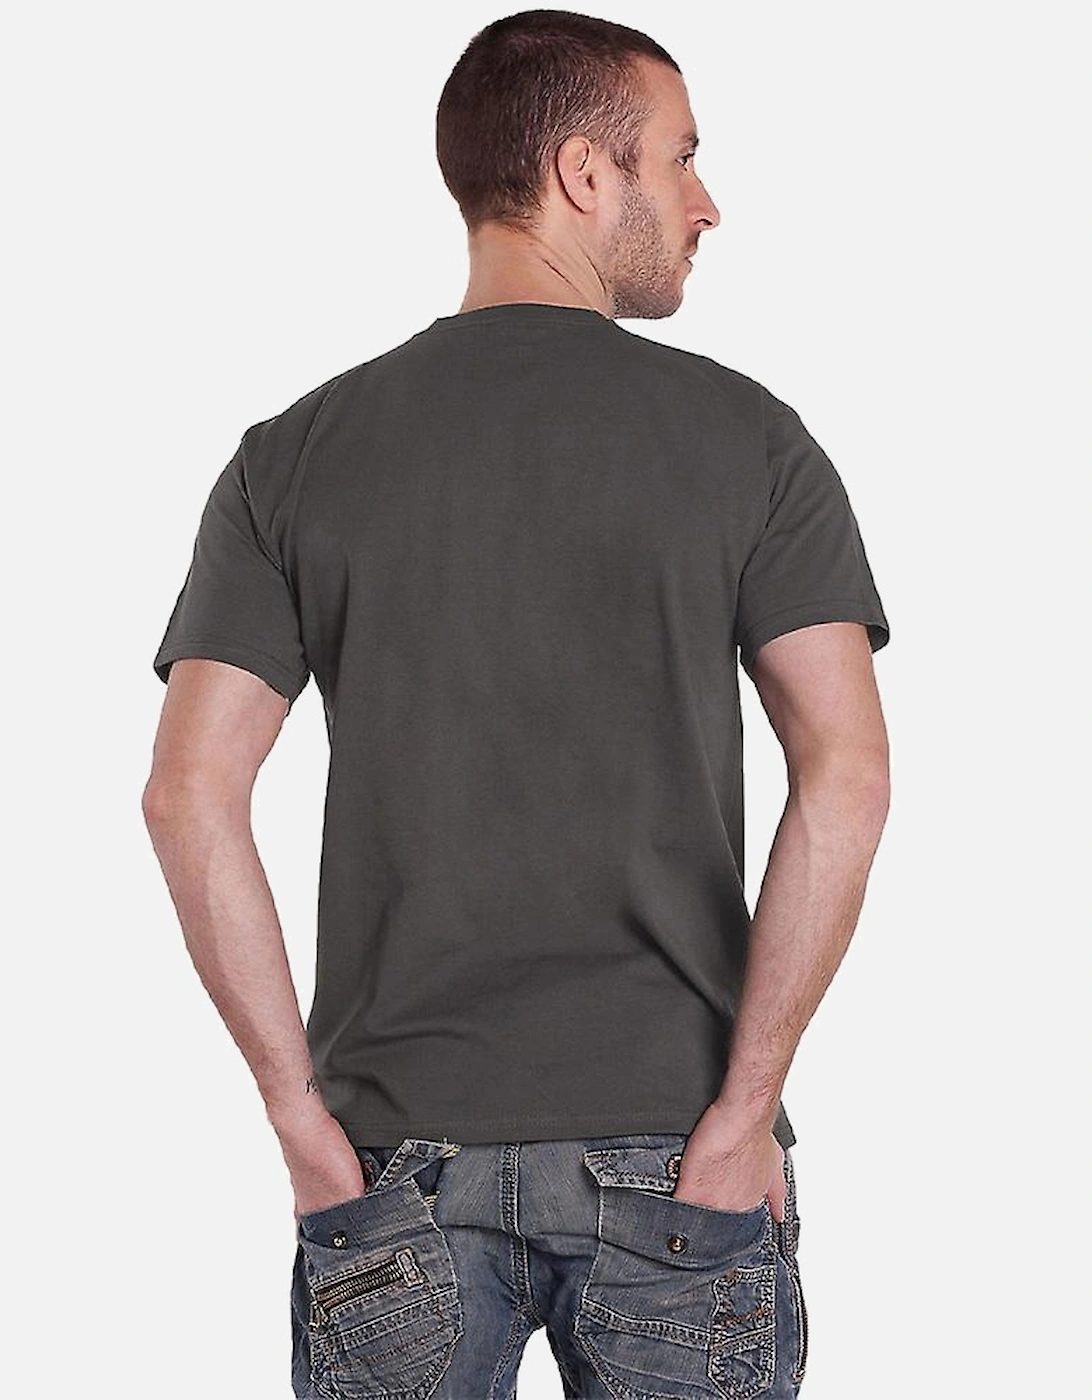 Unisex Adult Acoustic T-Shirt